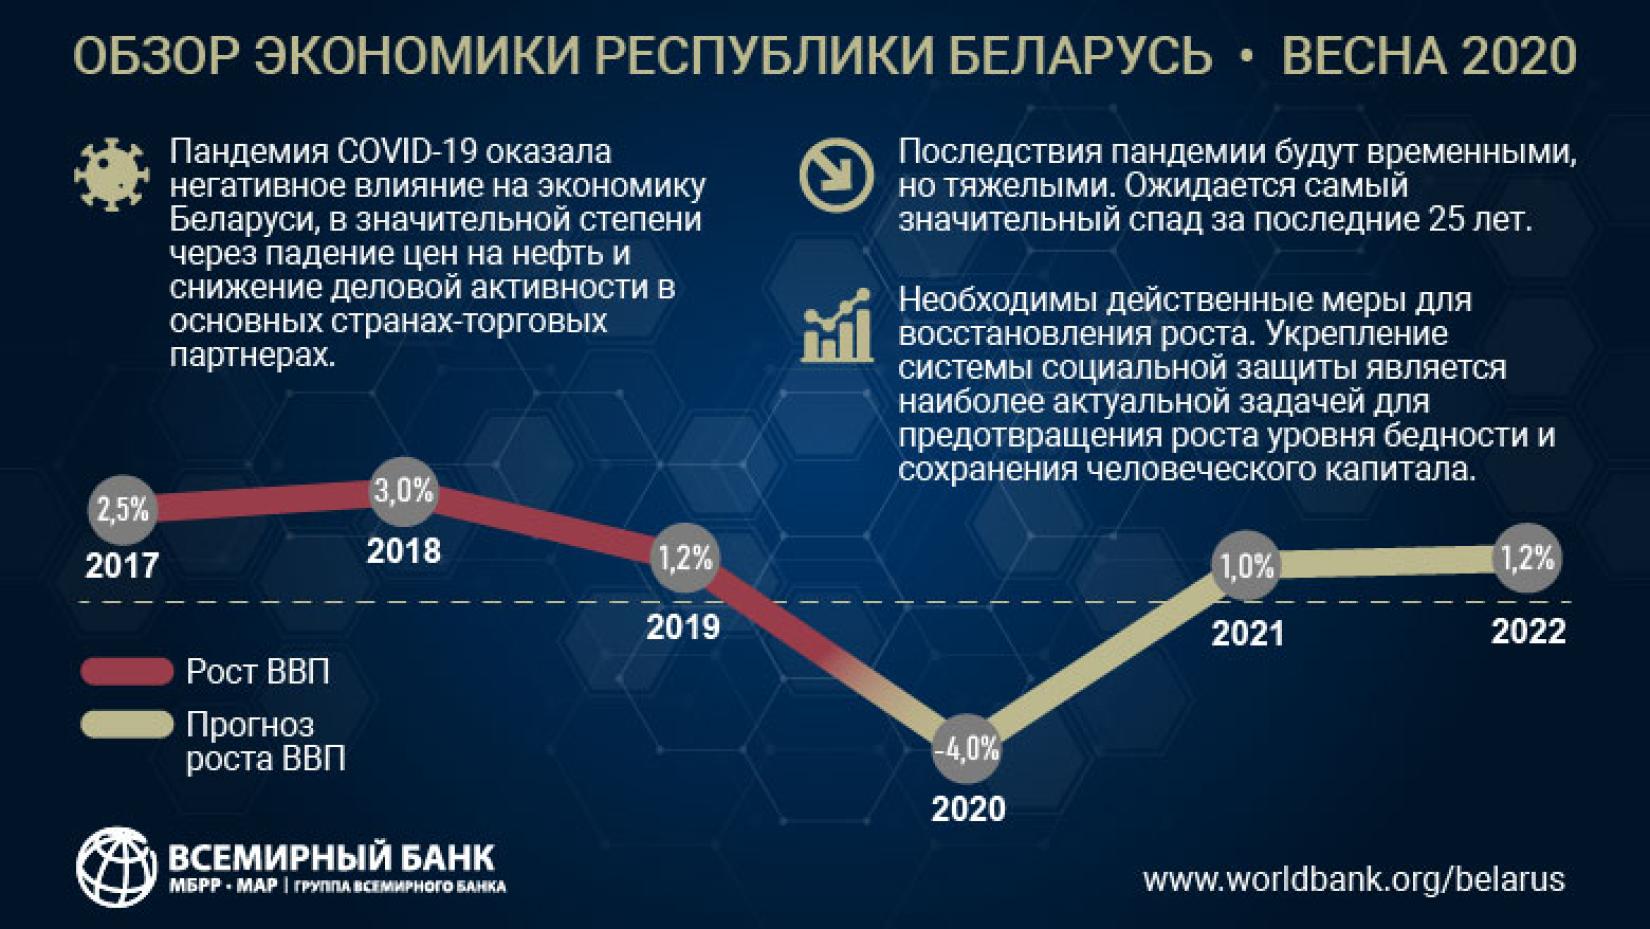 Экономика Беларуси стоит перед лицом серьезного кризиса